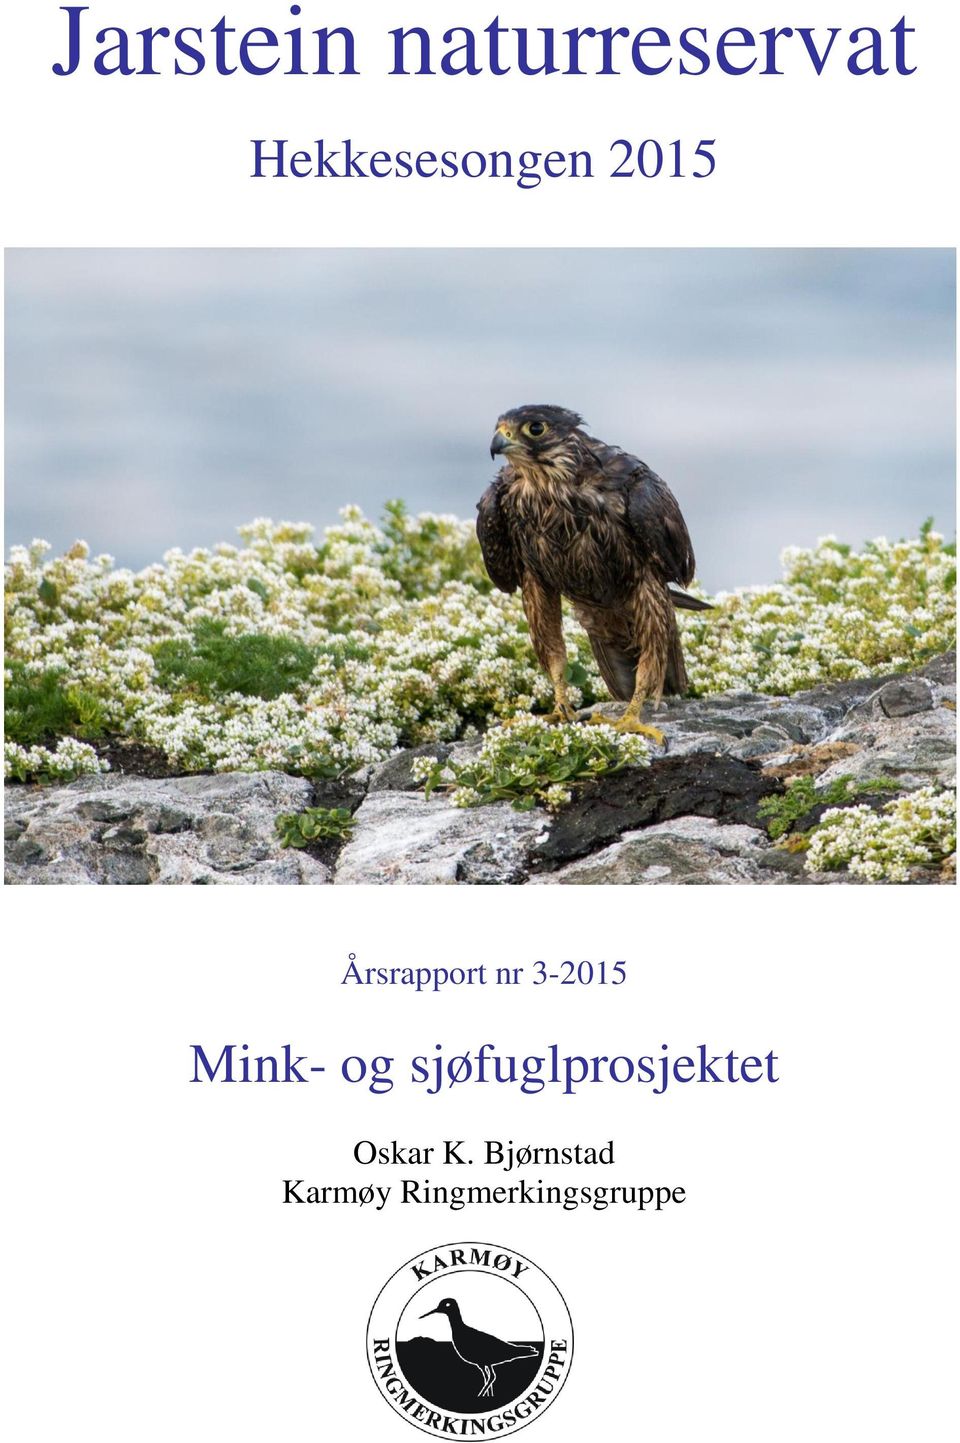 3-2015 Mink- og sjøfuglprosjektet